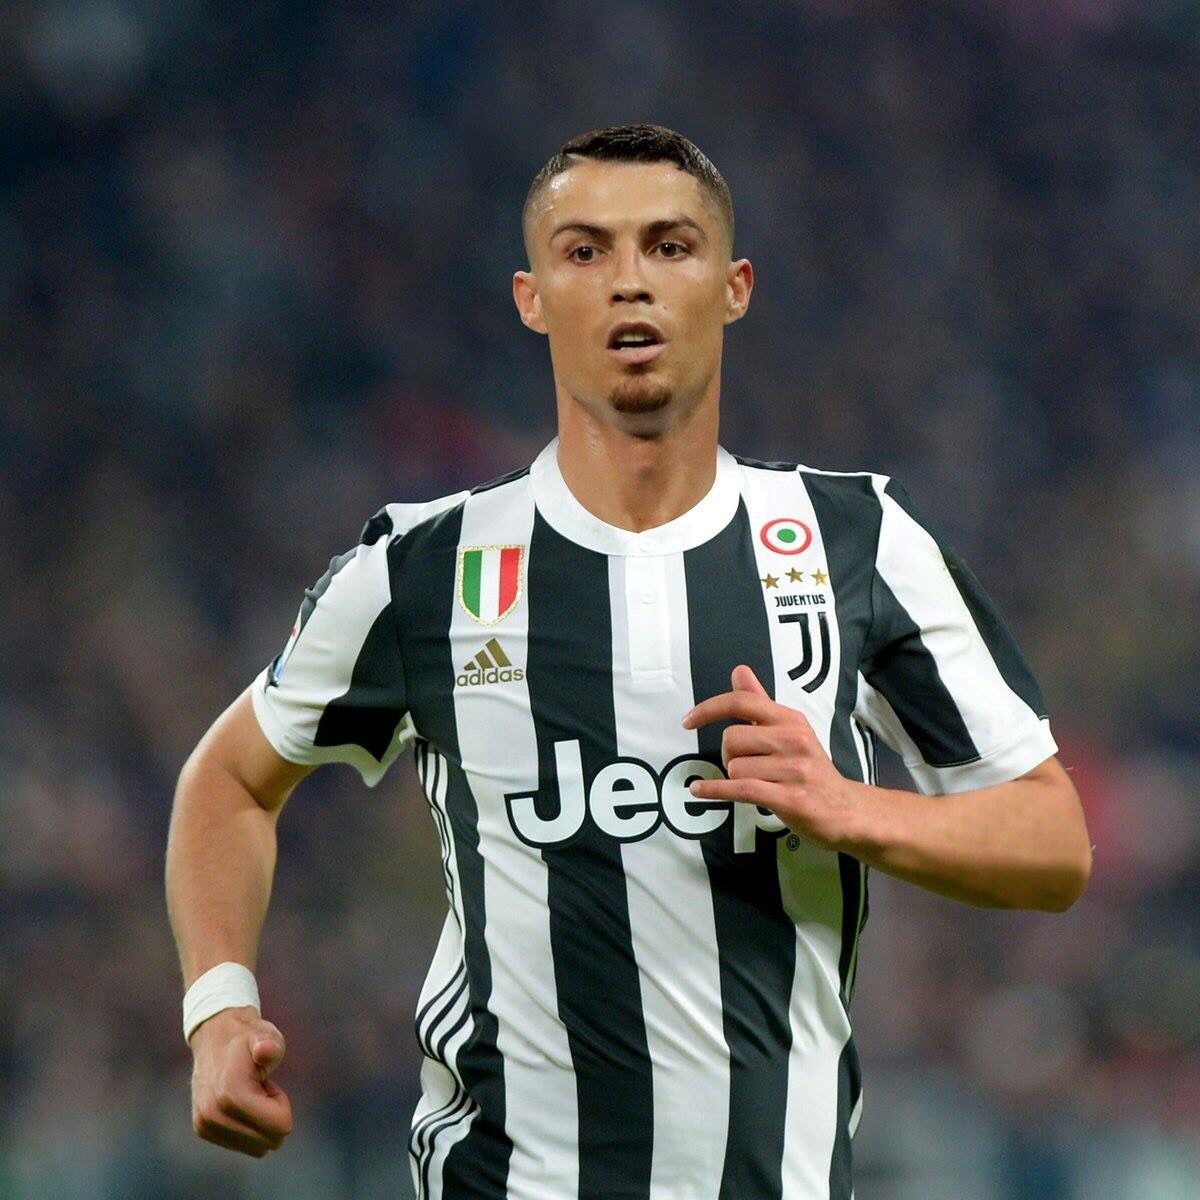 29 Fondos de pantalla de Cristiano Ronaldo Juventus | WallpaperCarax